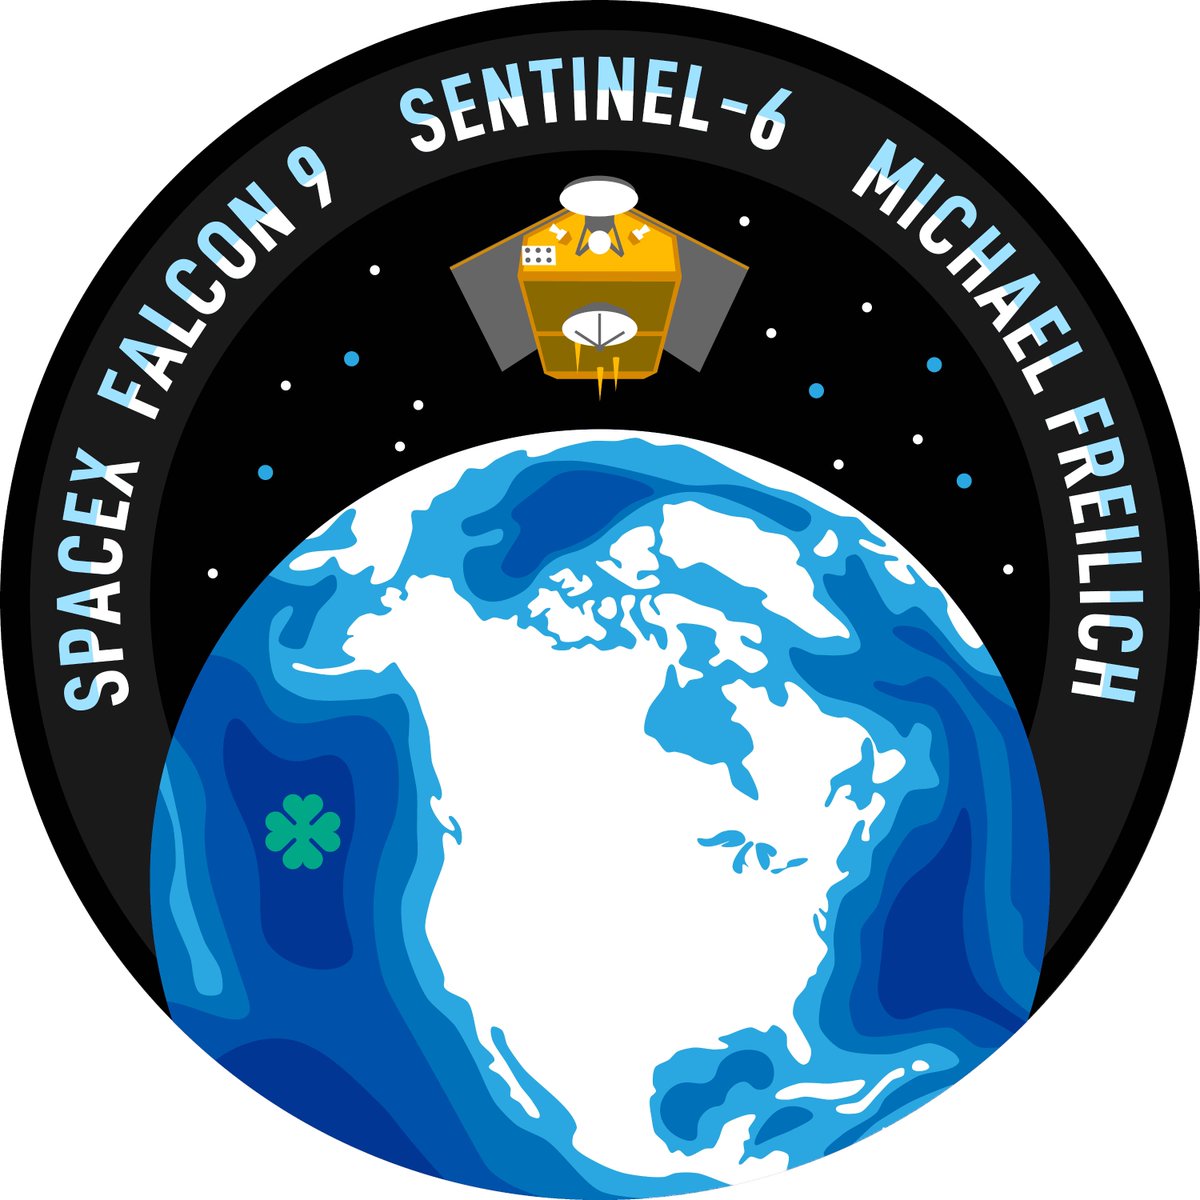 #Sentinel6 mission patch in 3D

Original 2D patch for comparison